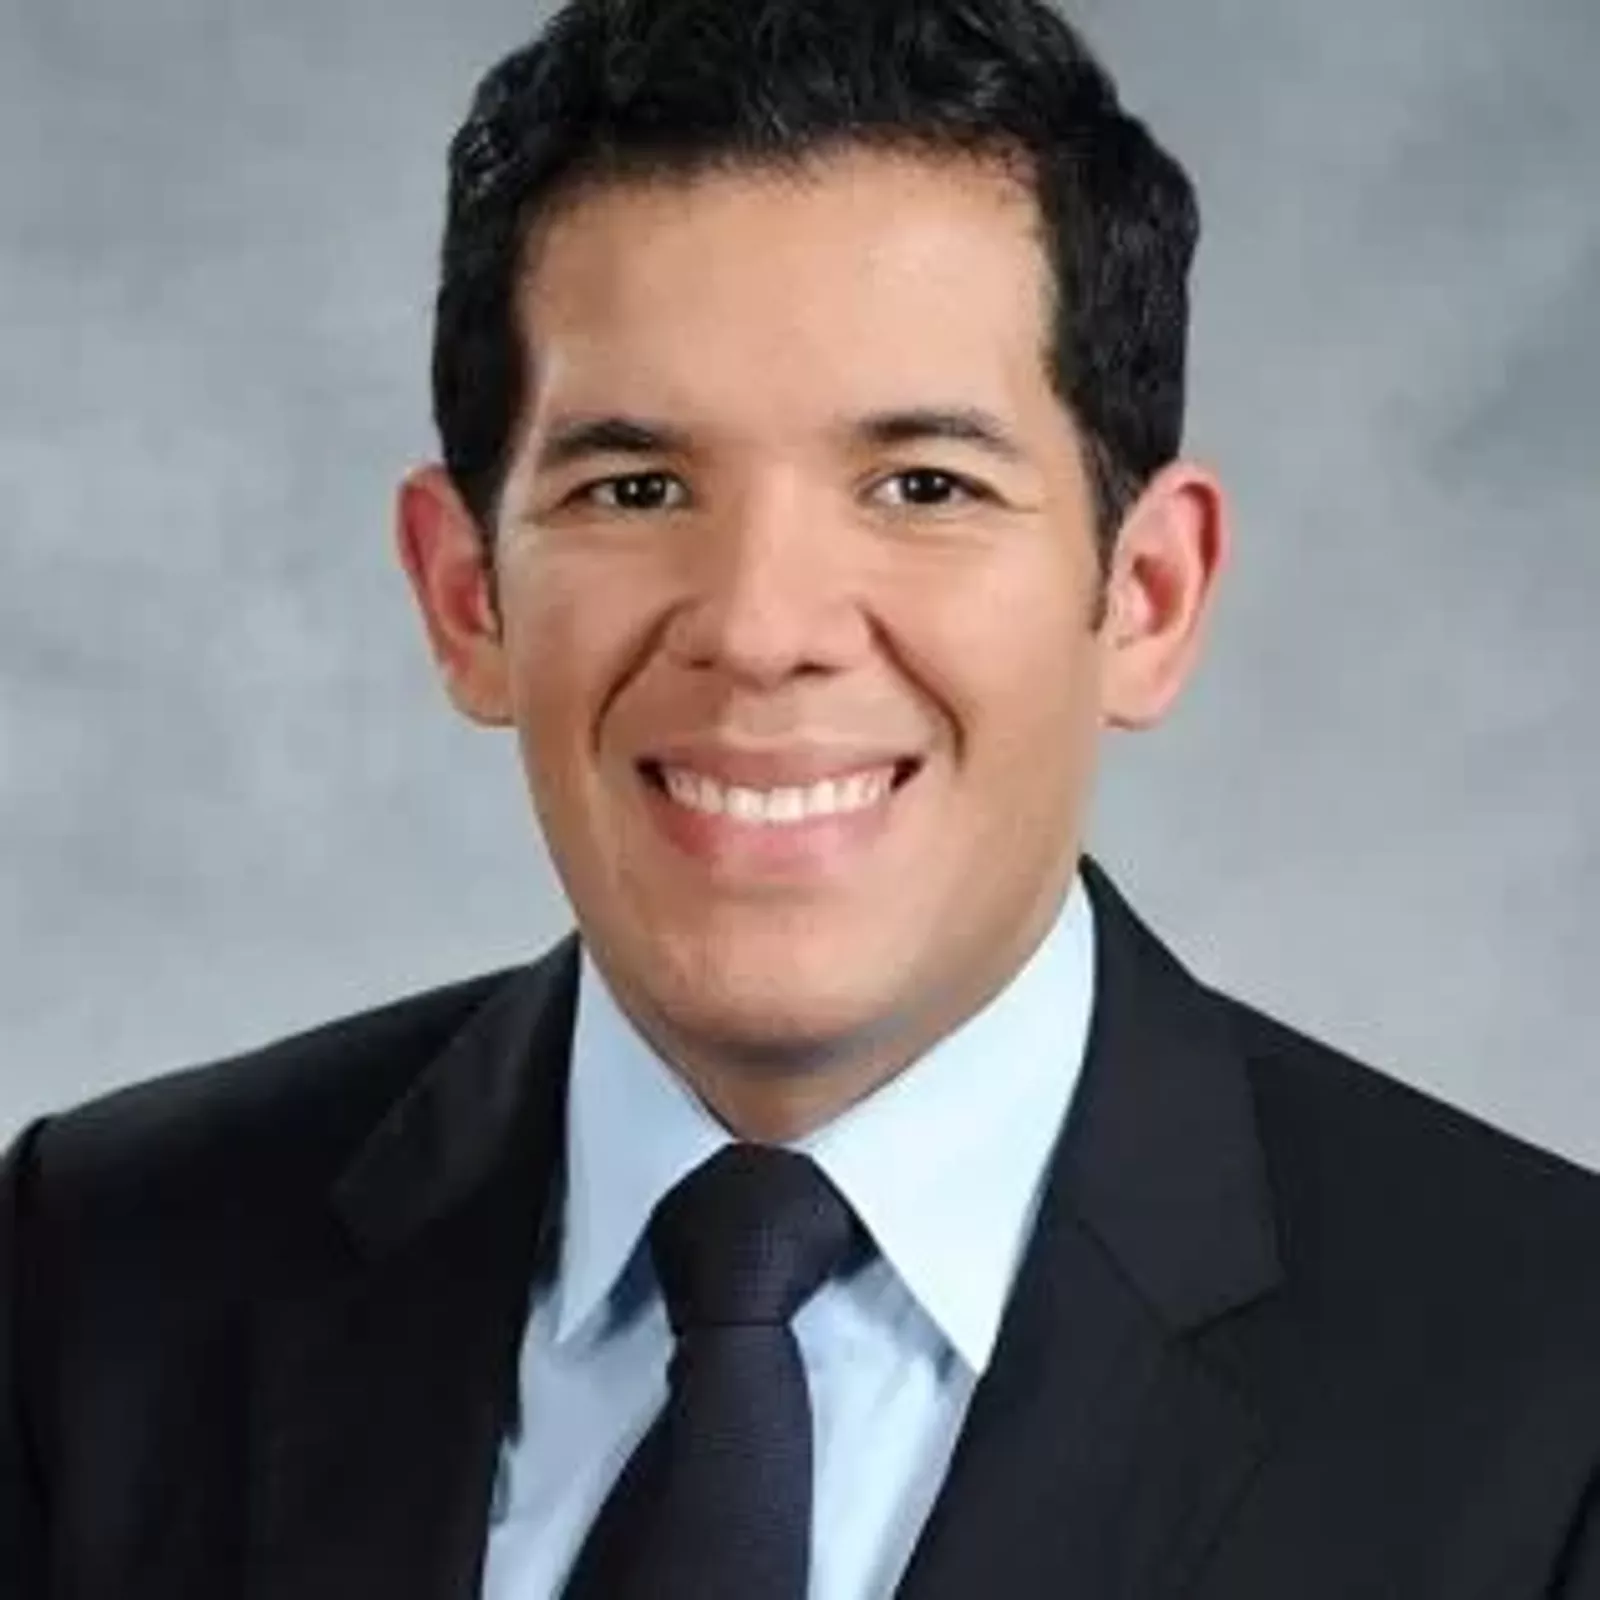 Juan Carlos Martinez